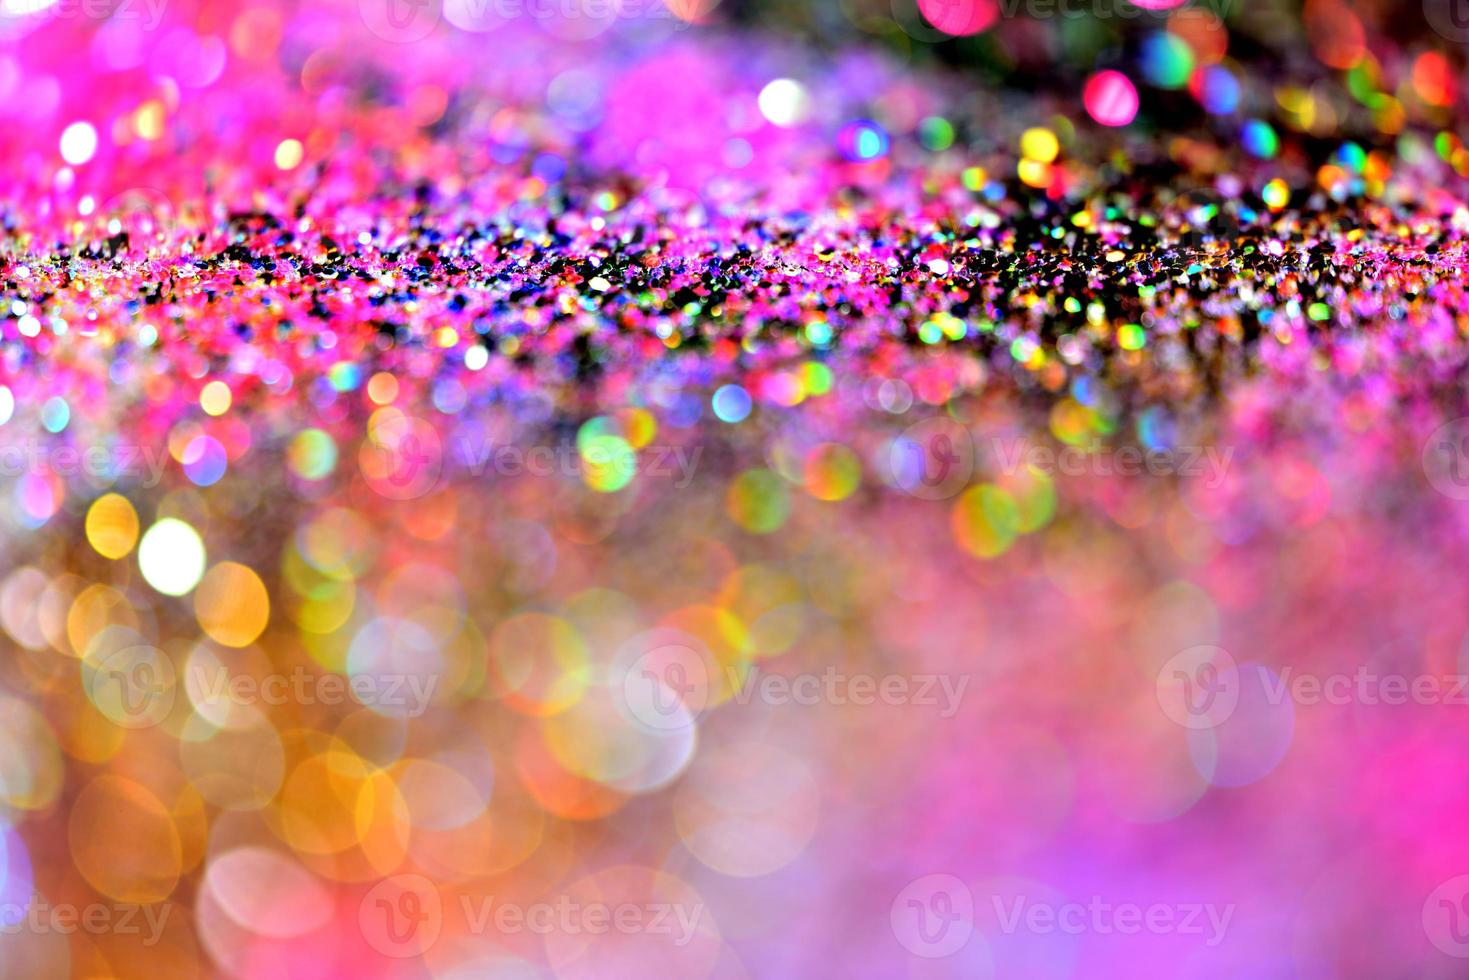 bokeh glitter färgfull suddig abstrakt bakgrund för födelsedag, årsdag, bröllop, nyårsafton eller jul foto